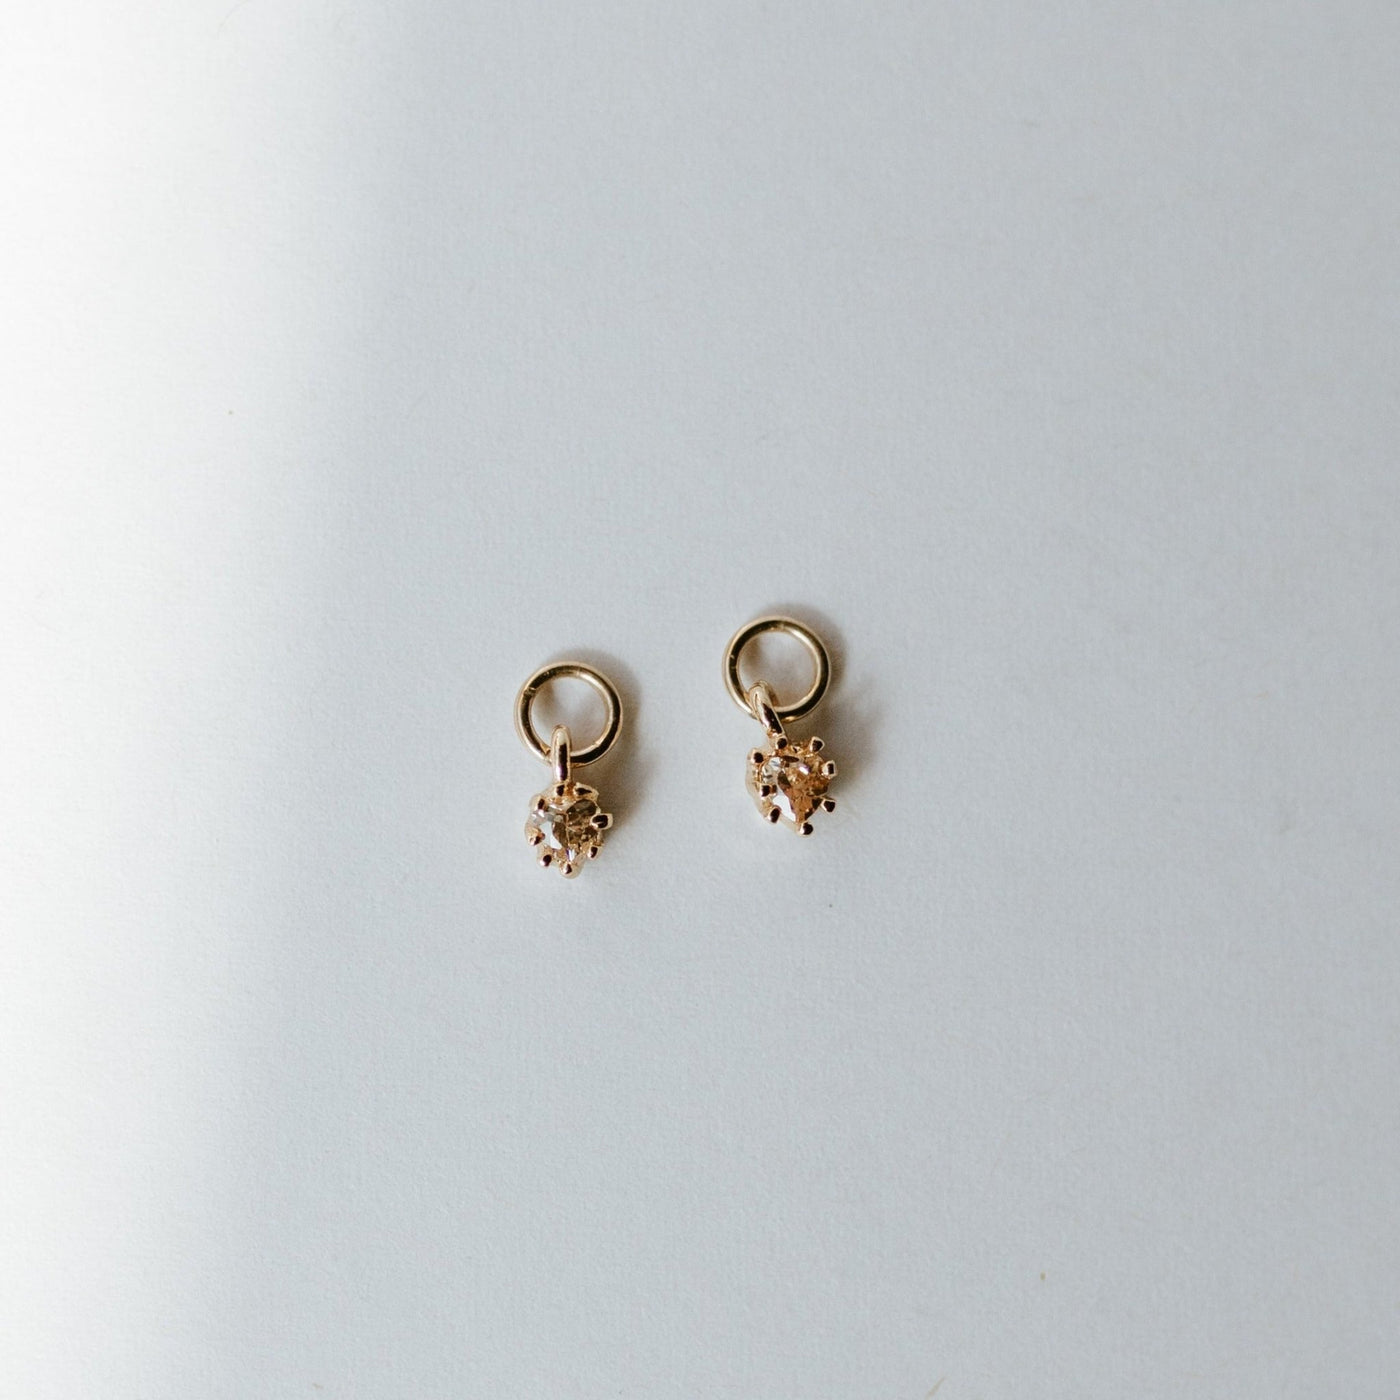 Auckland Earring Charm (1 Pair) - Jillian Leigh Jewellery - earrings